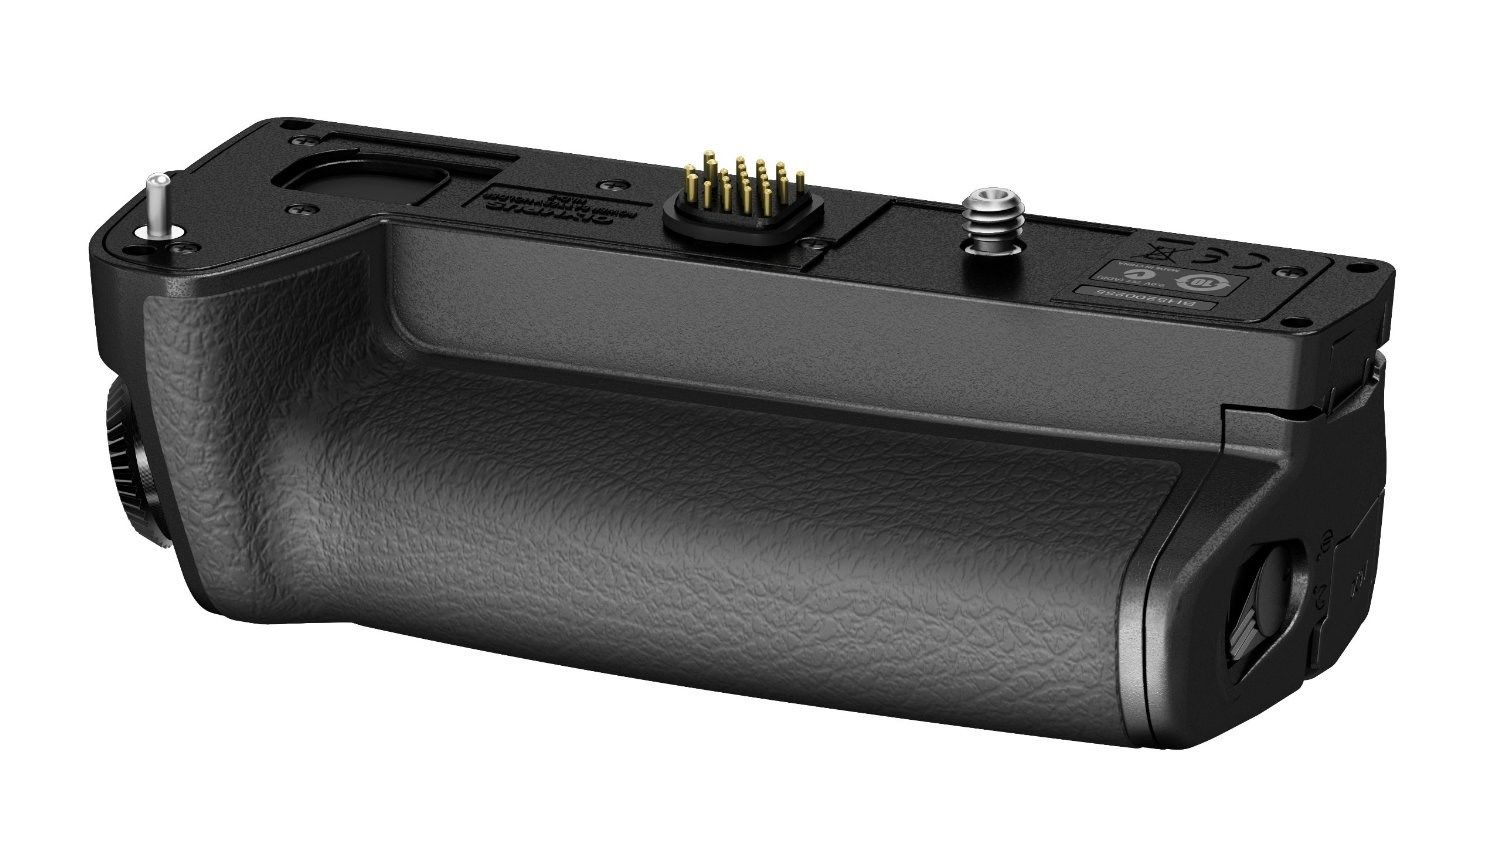 Olympus HLD-7 Battery Grip FOR OM-D E-M1